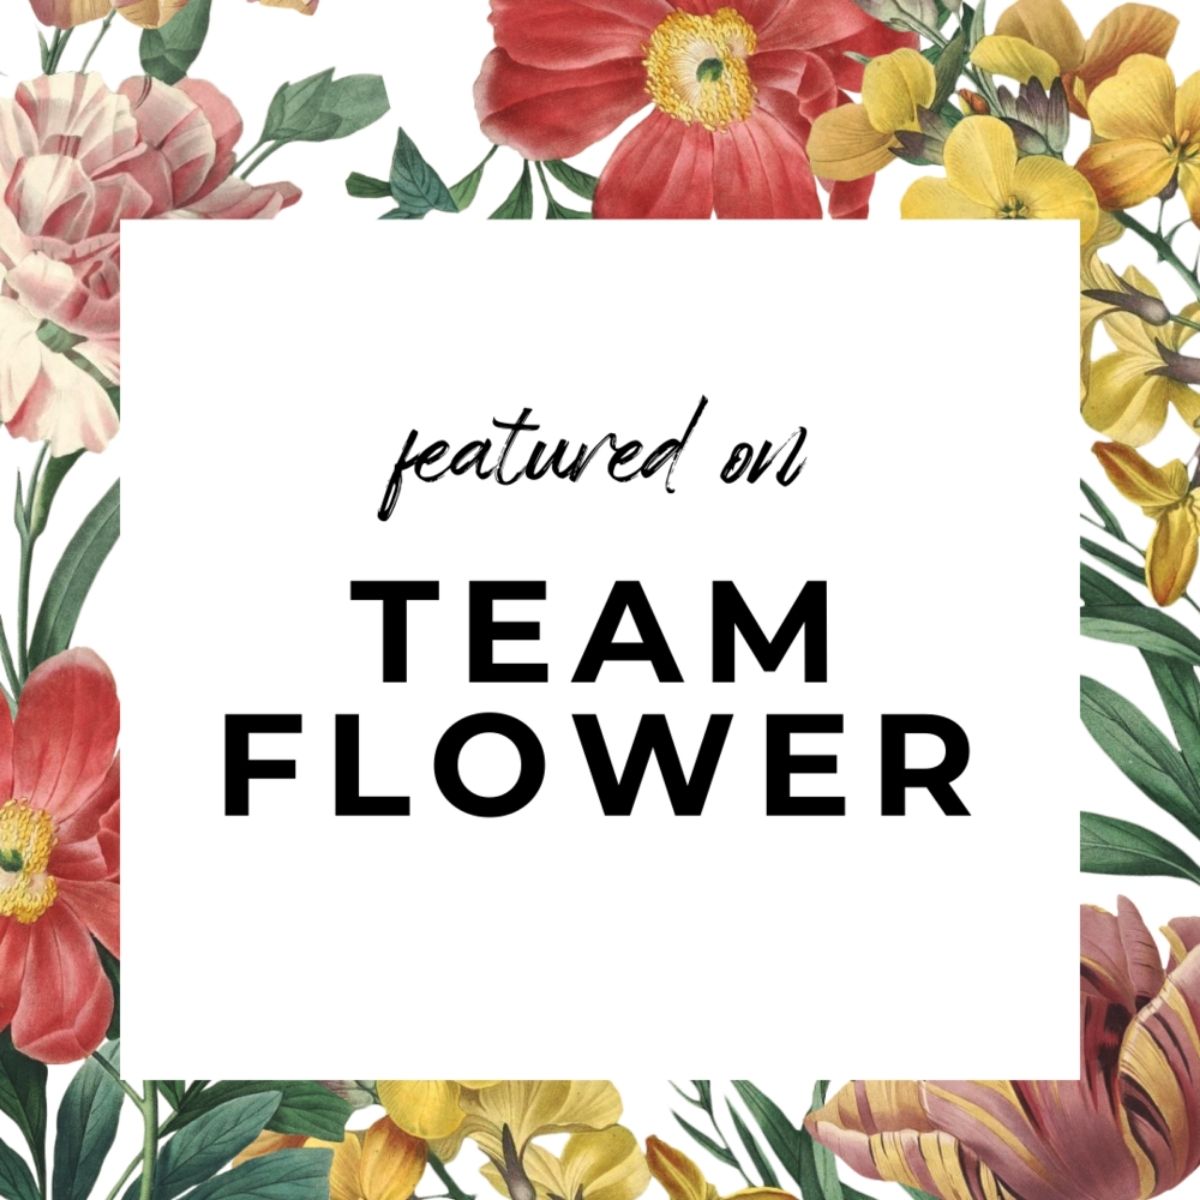 Team flower flower farming podcasts on thursd